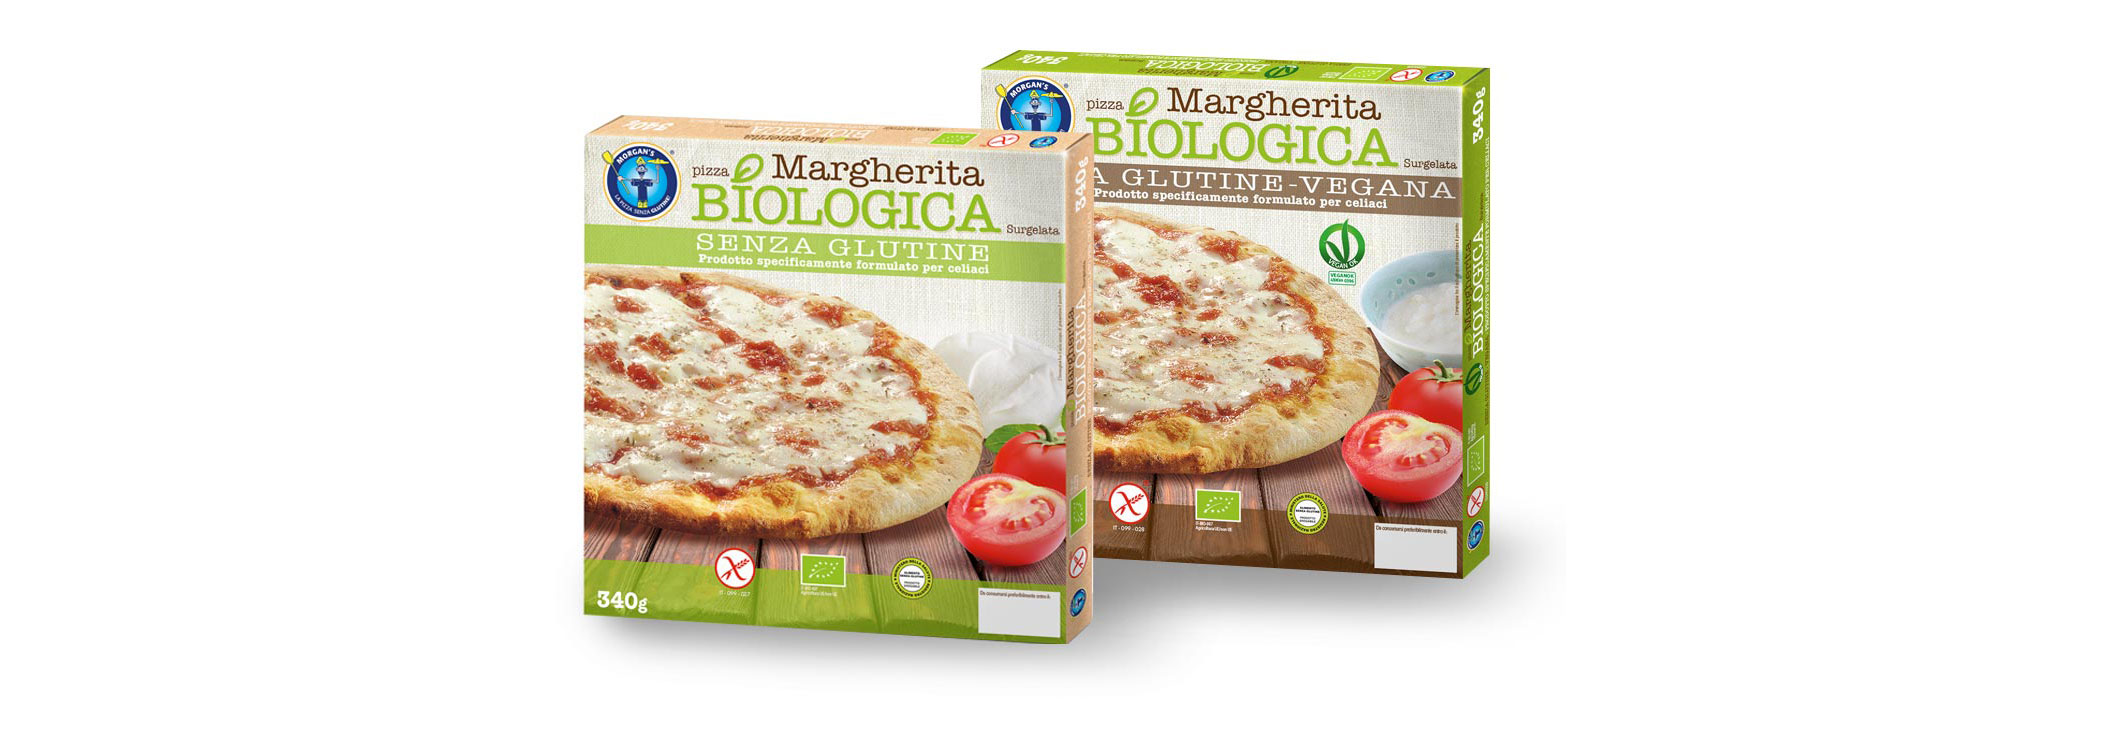 Morgan's Pizza - Produzione pizze Biologiche